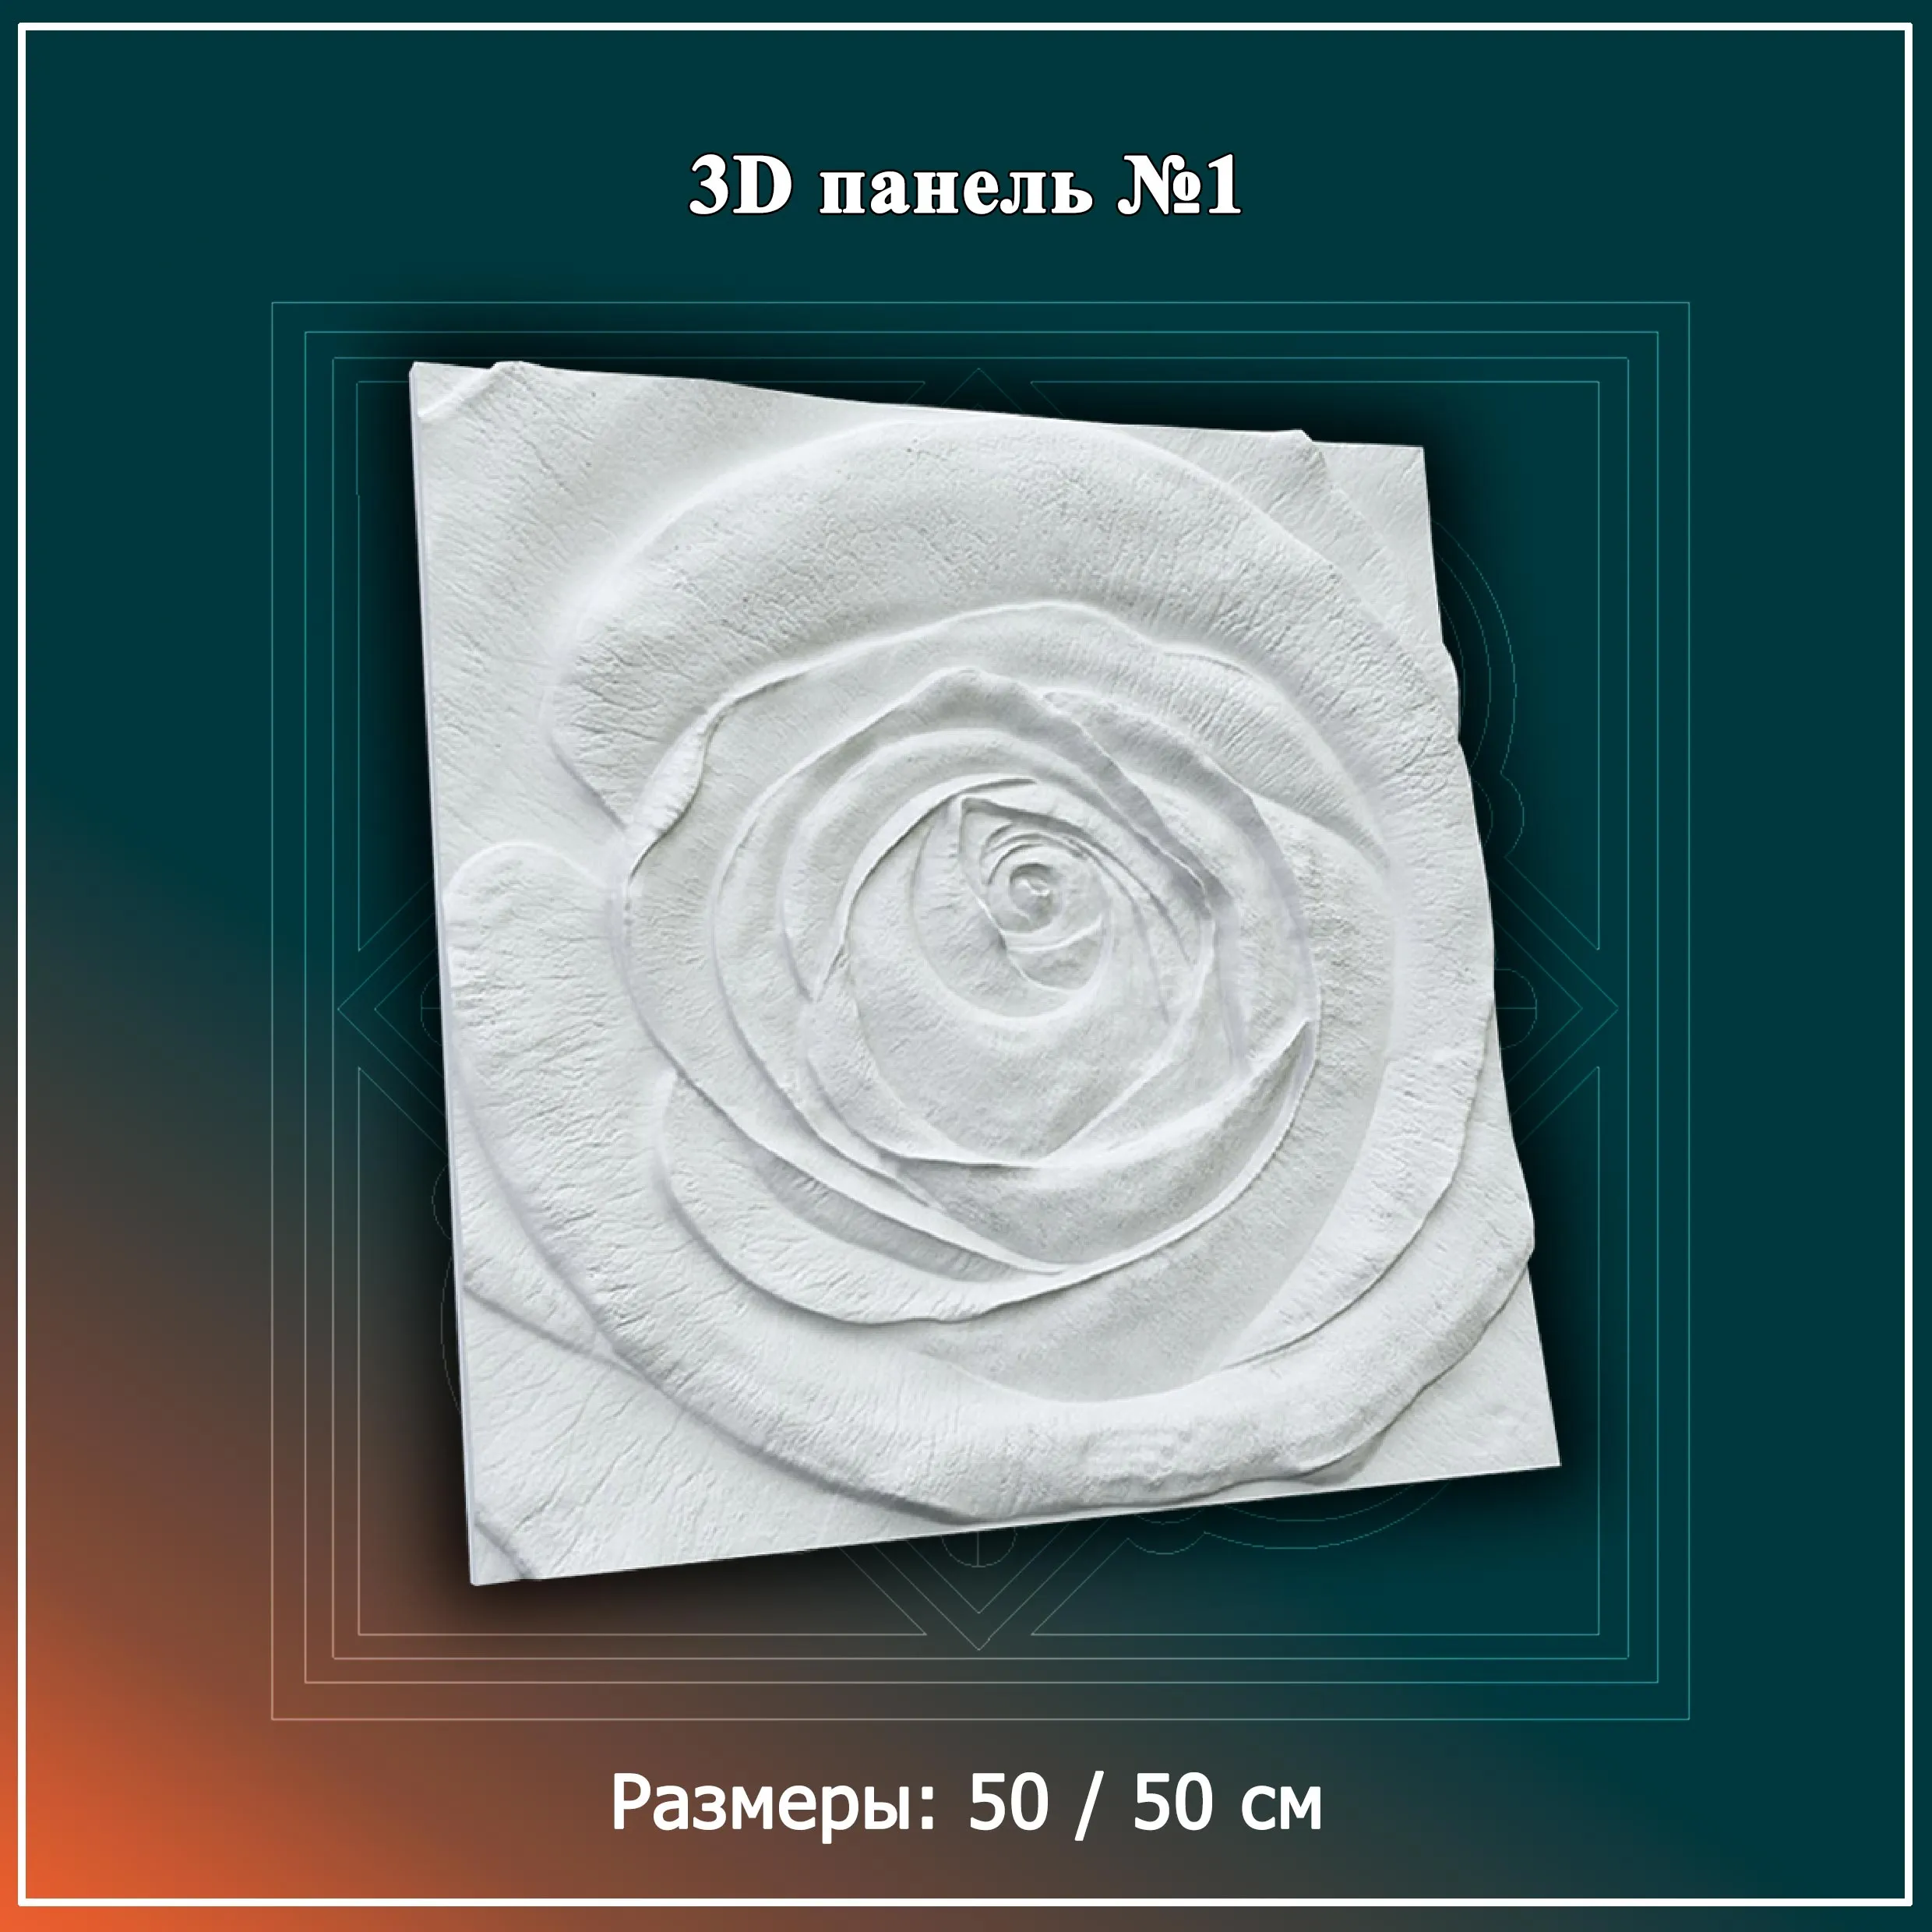 3D Панель №1 Размеры: 50 / 50 см#1